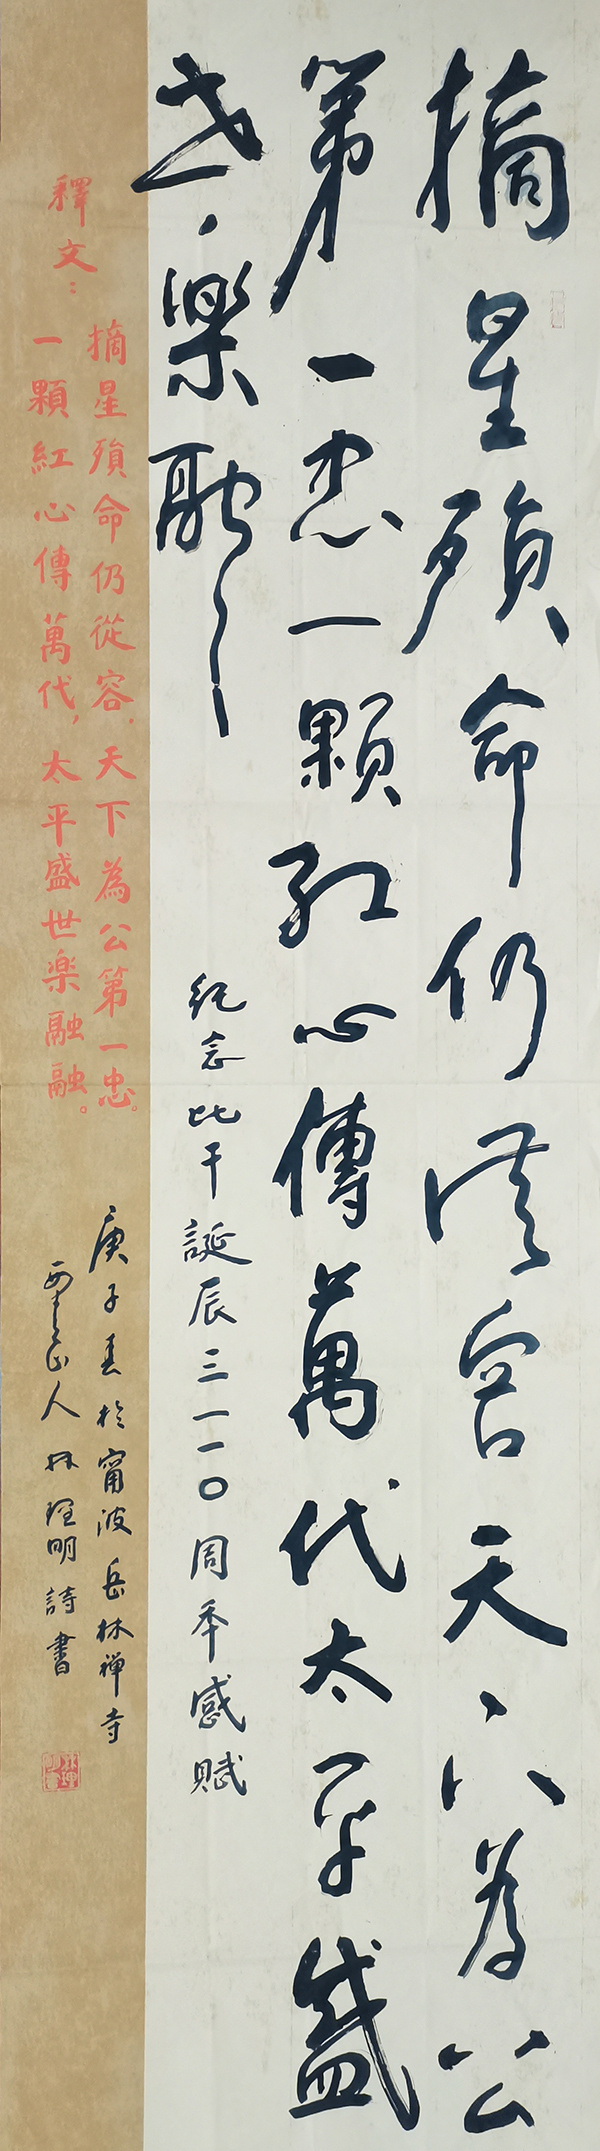 林理明《我的背后是祖国》向新中国成立75周年致敬(图13)